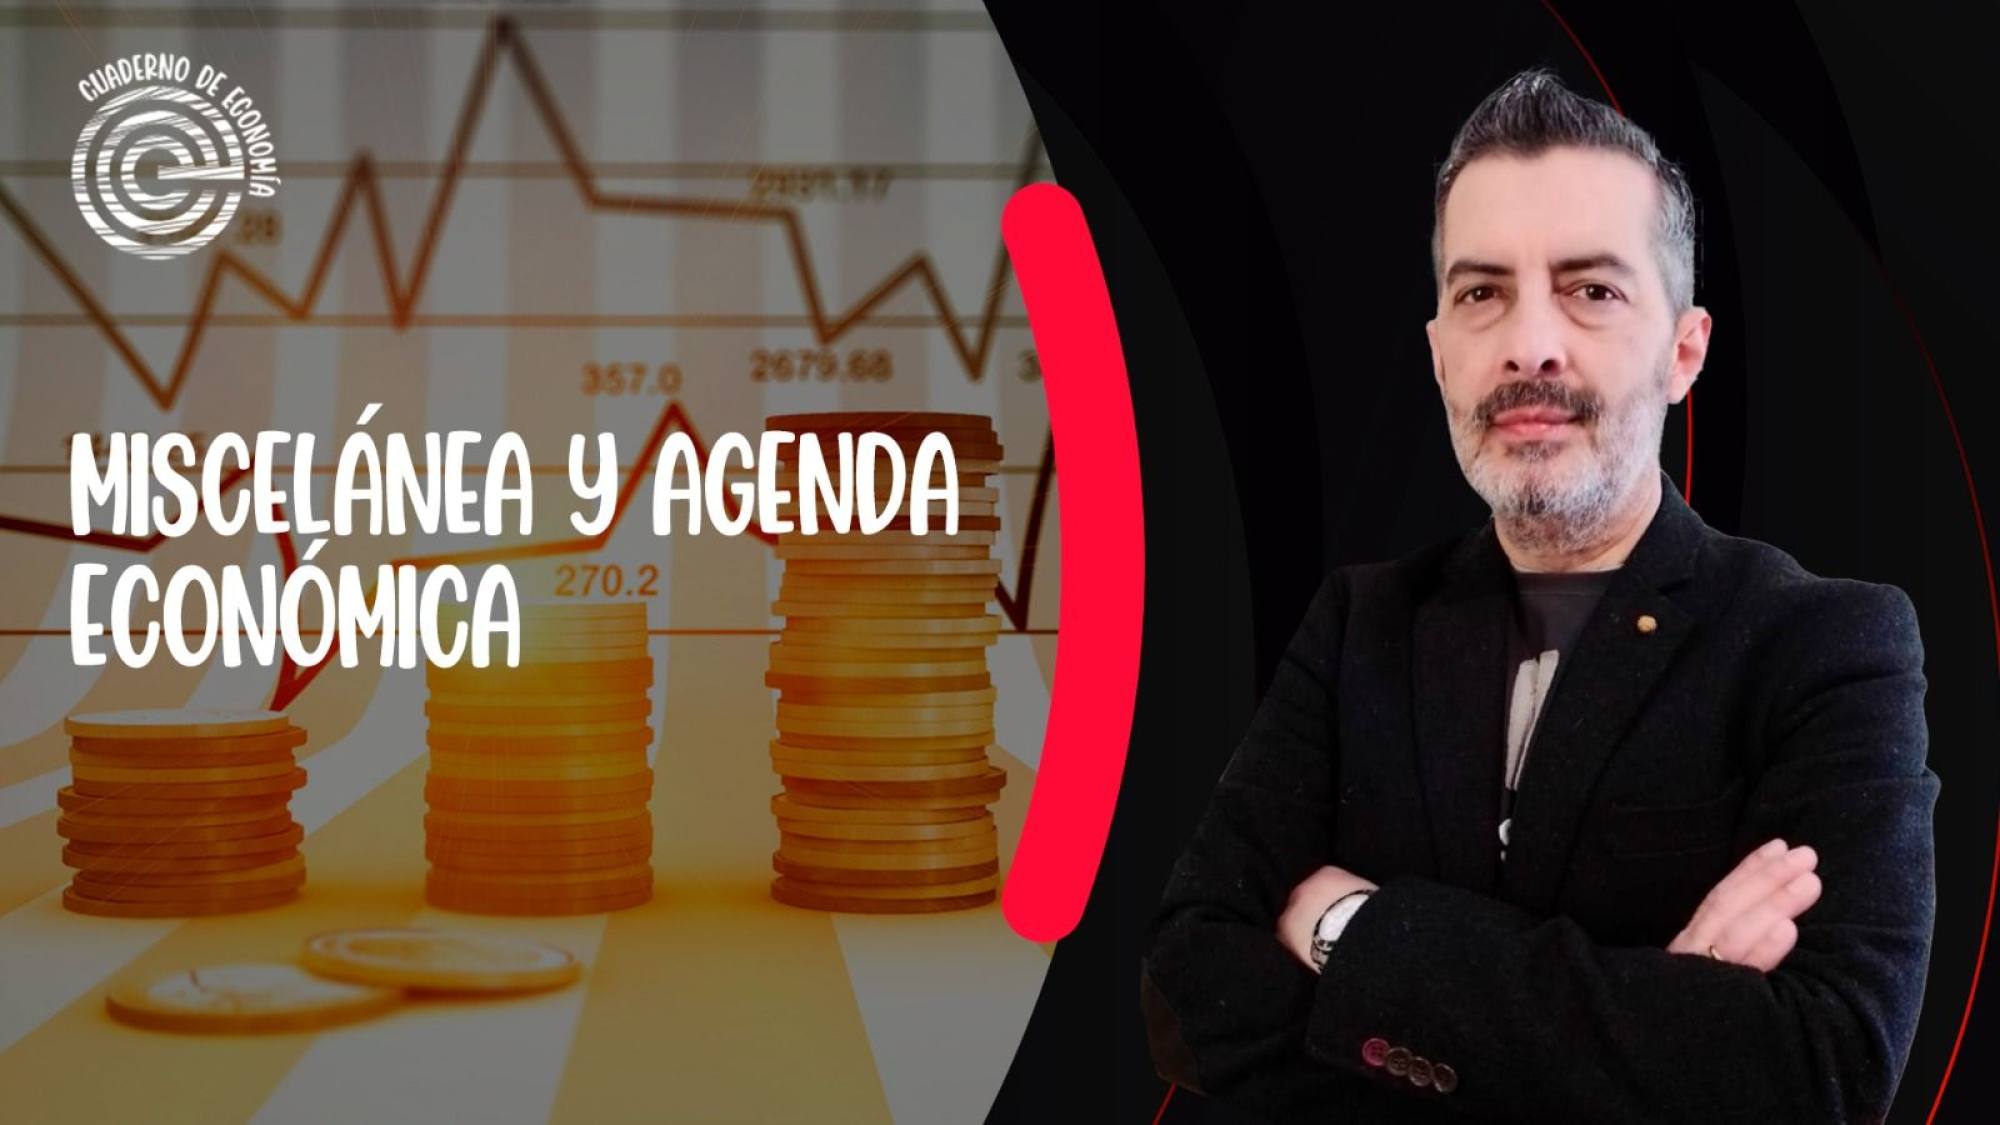 Agenda económica: Repsol, Scotiabank y comisiones, déficit fiscal ¡Y más!, Epicentro TV